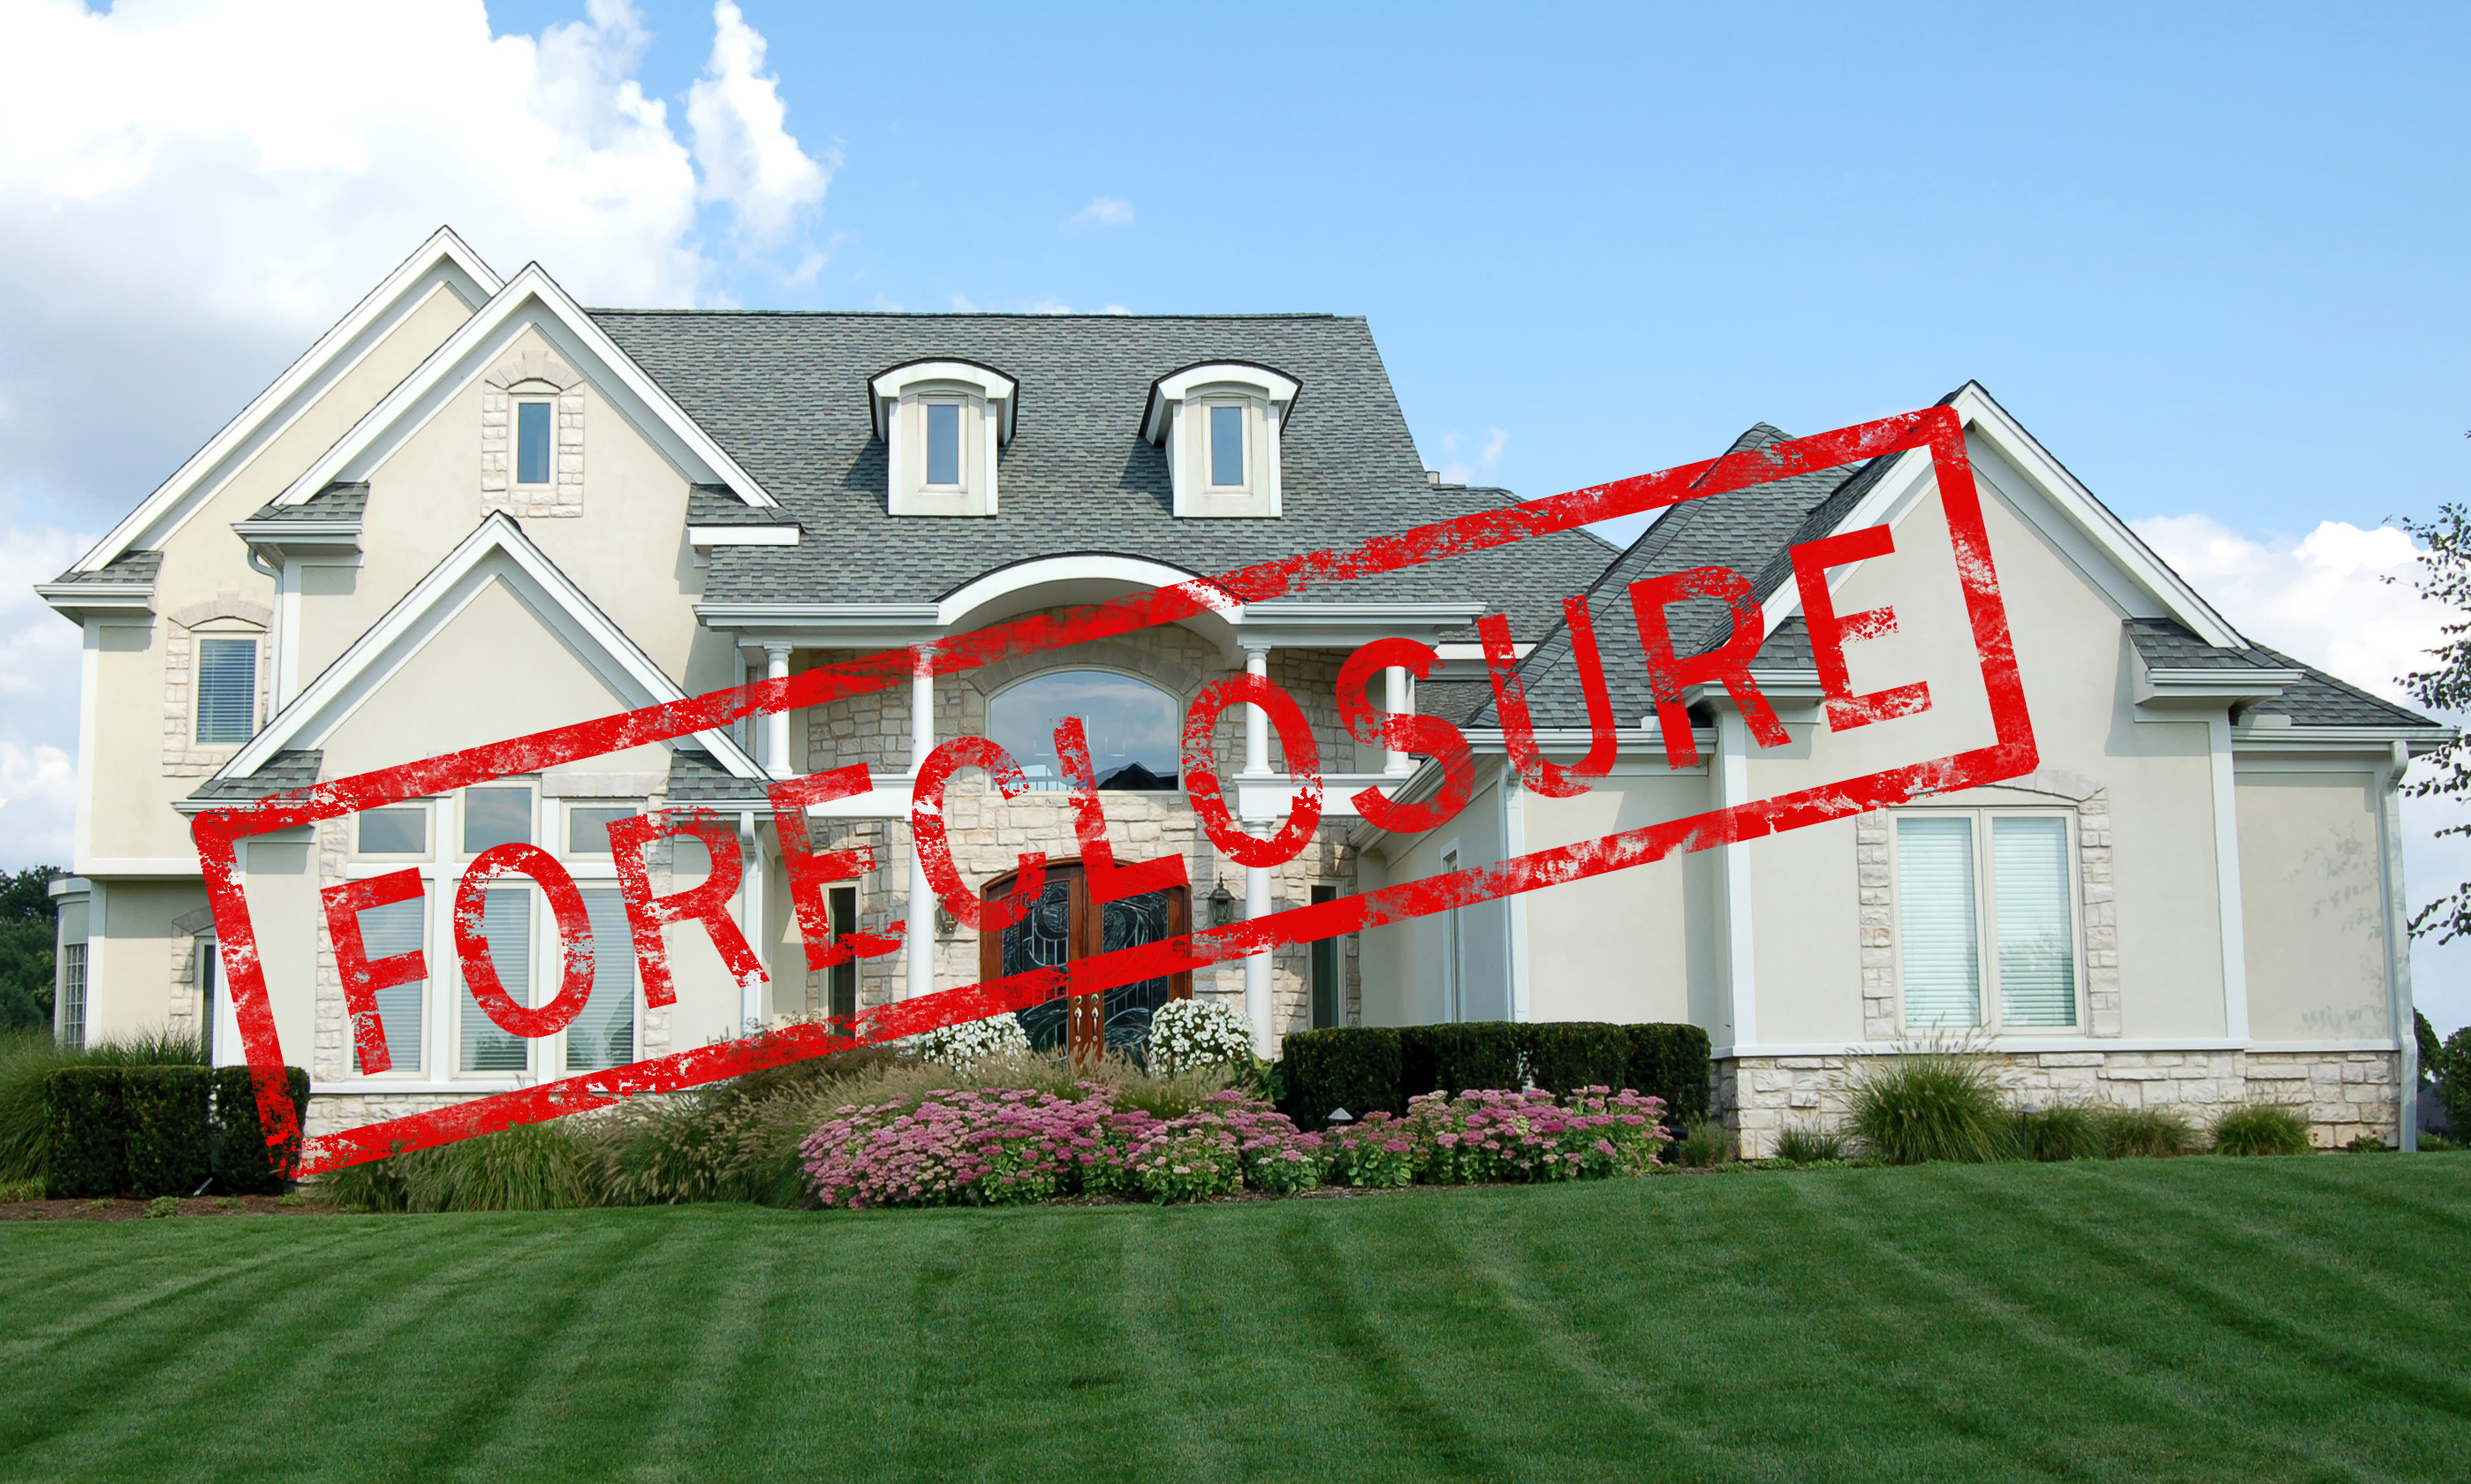 Call Expose Value Appraisals to discuss valuations regarding Queens foreclosures